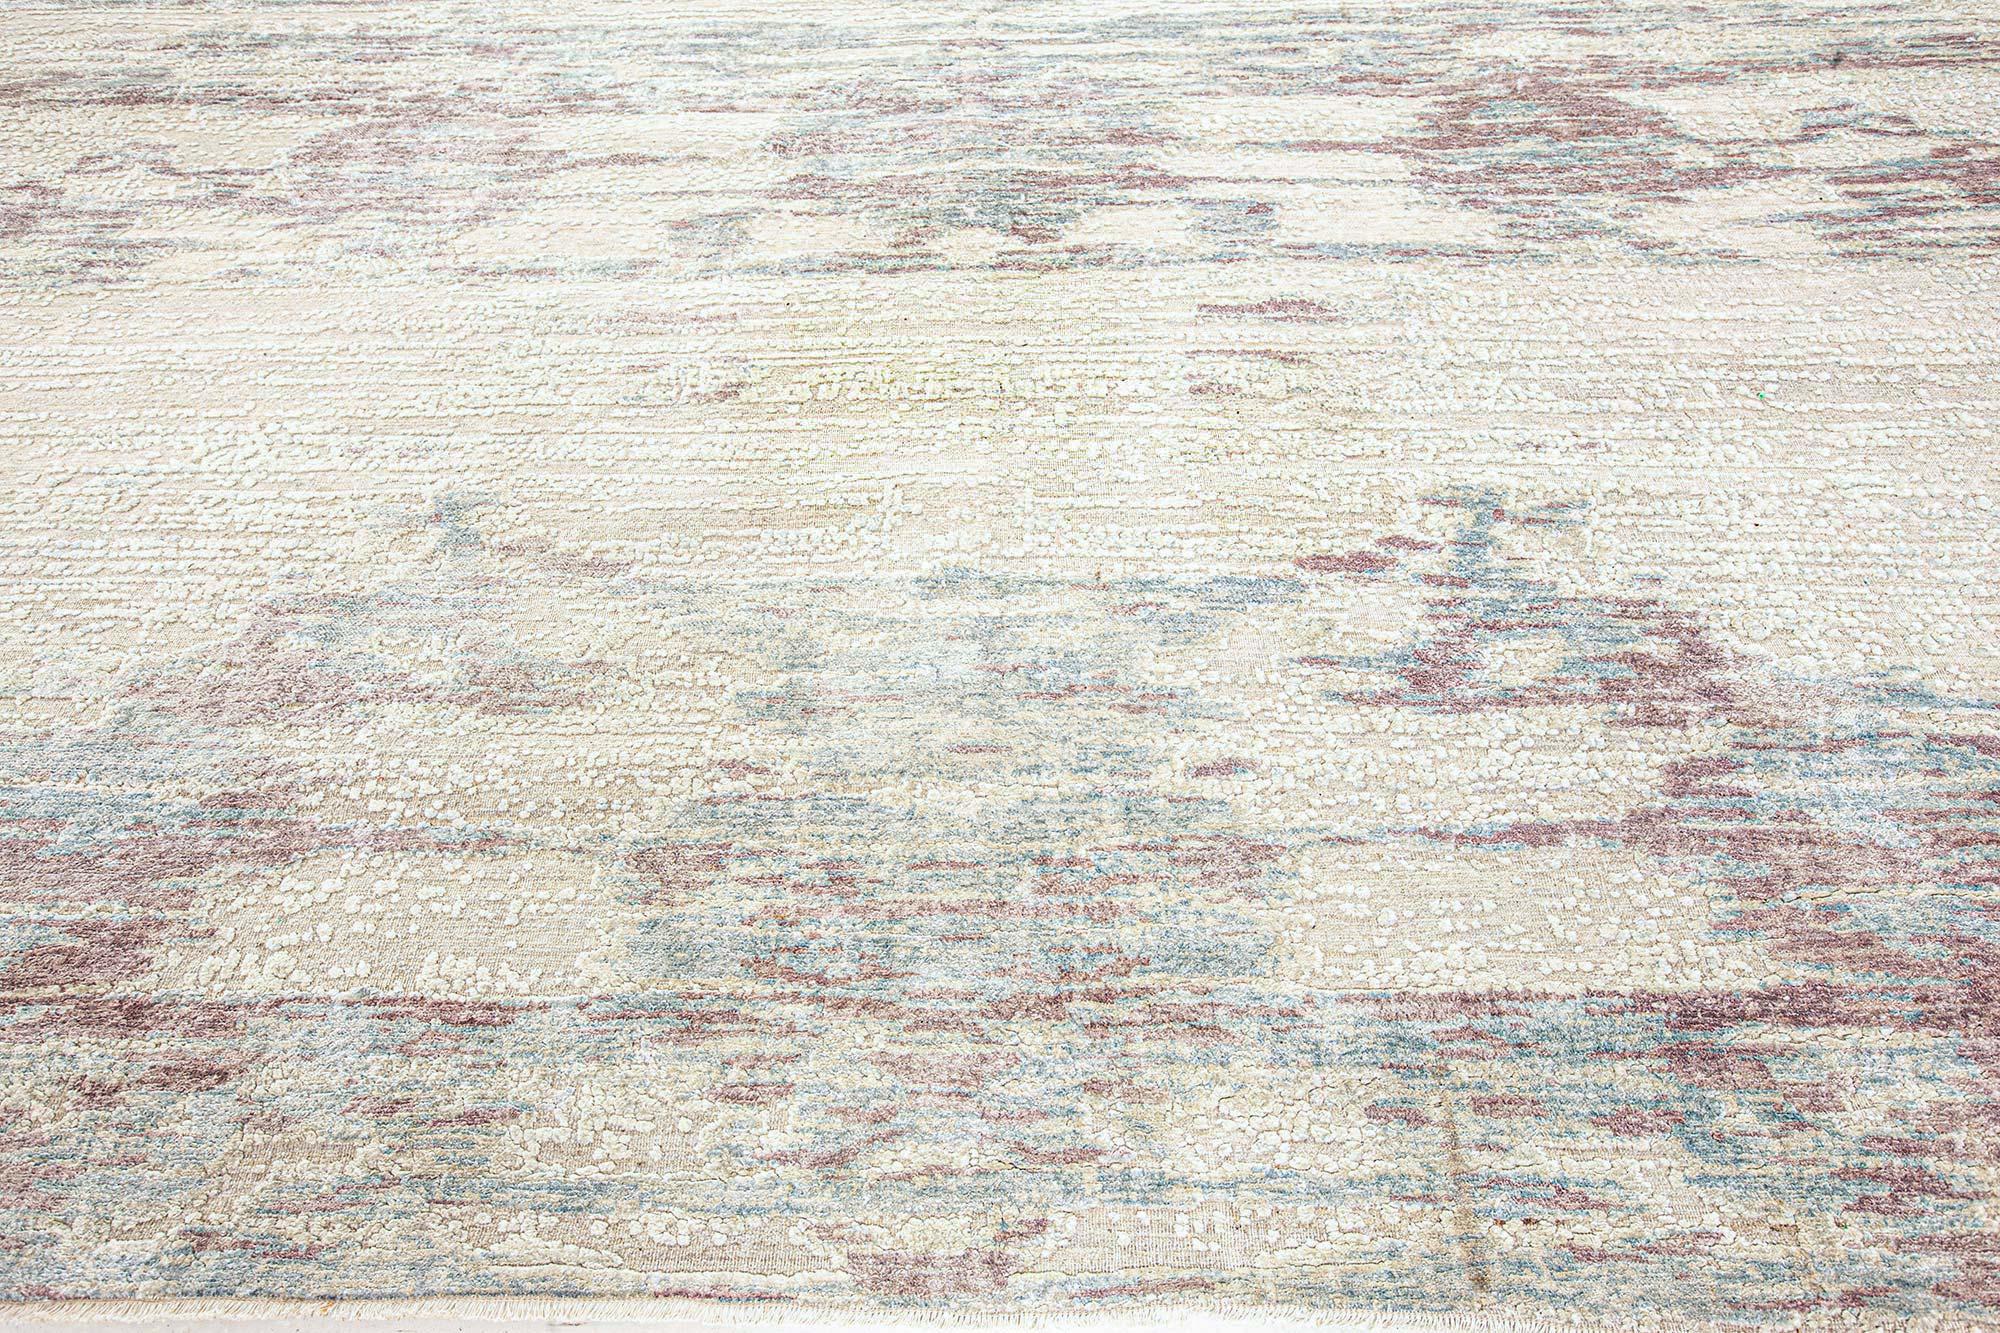 One-of-a-Kind Modern Anatolia rug by Doris Leslie Blau
Size: 11'8